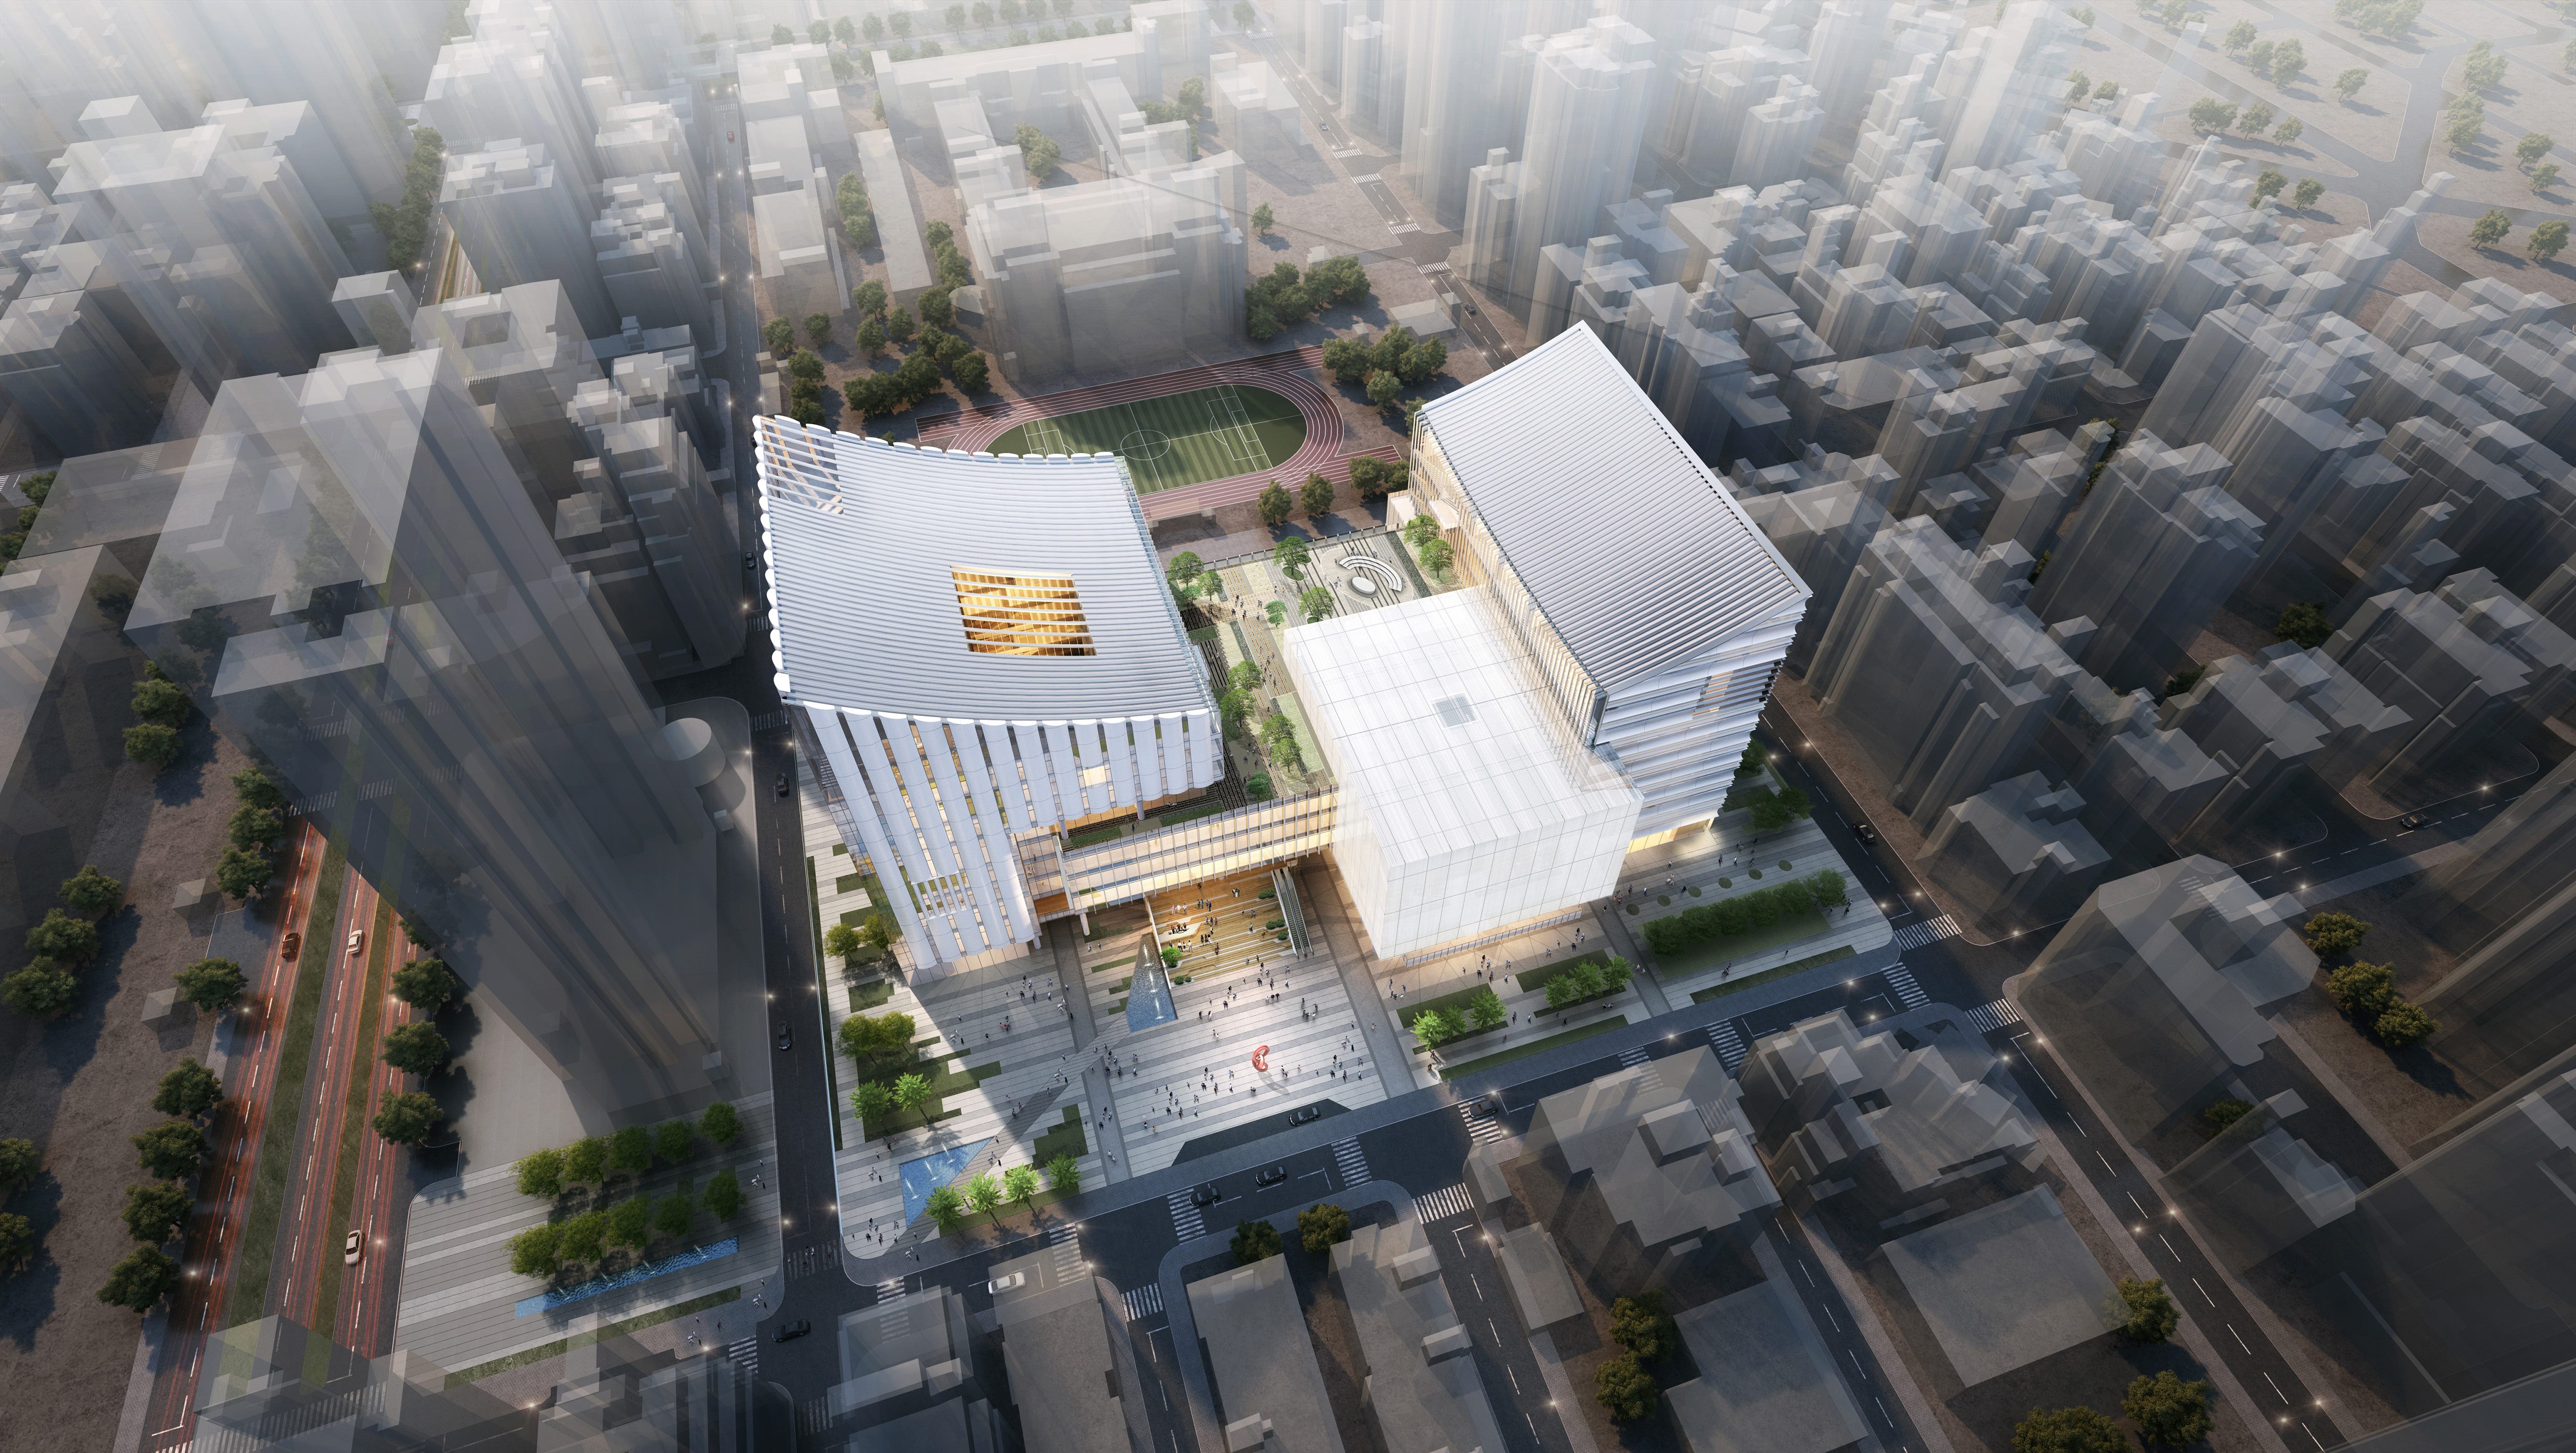 臺北音樂廳與圖書總館(音圖中心)新建工程競圖決標 打造全臺首座兼具音樂廳與圖書館的文化新地標